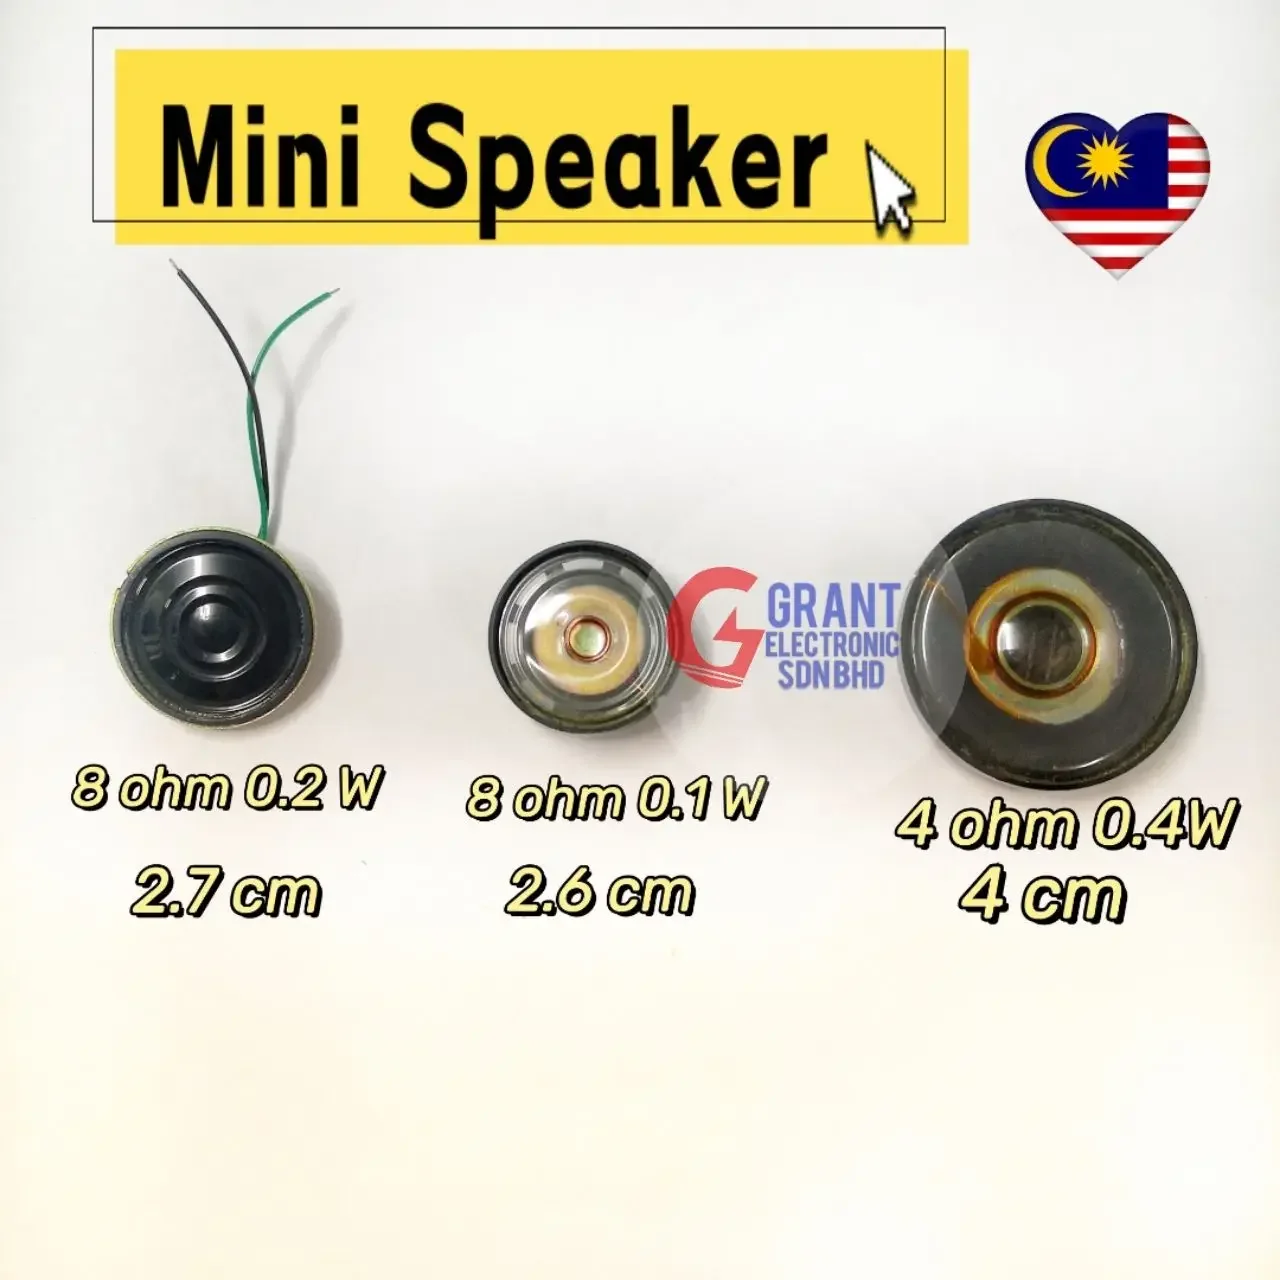 Mini Speaker 8ohm 0.1watt 8 ohm 0.2watt 4ohm 0.4w